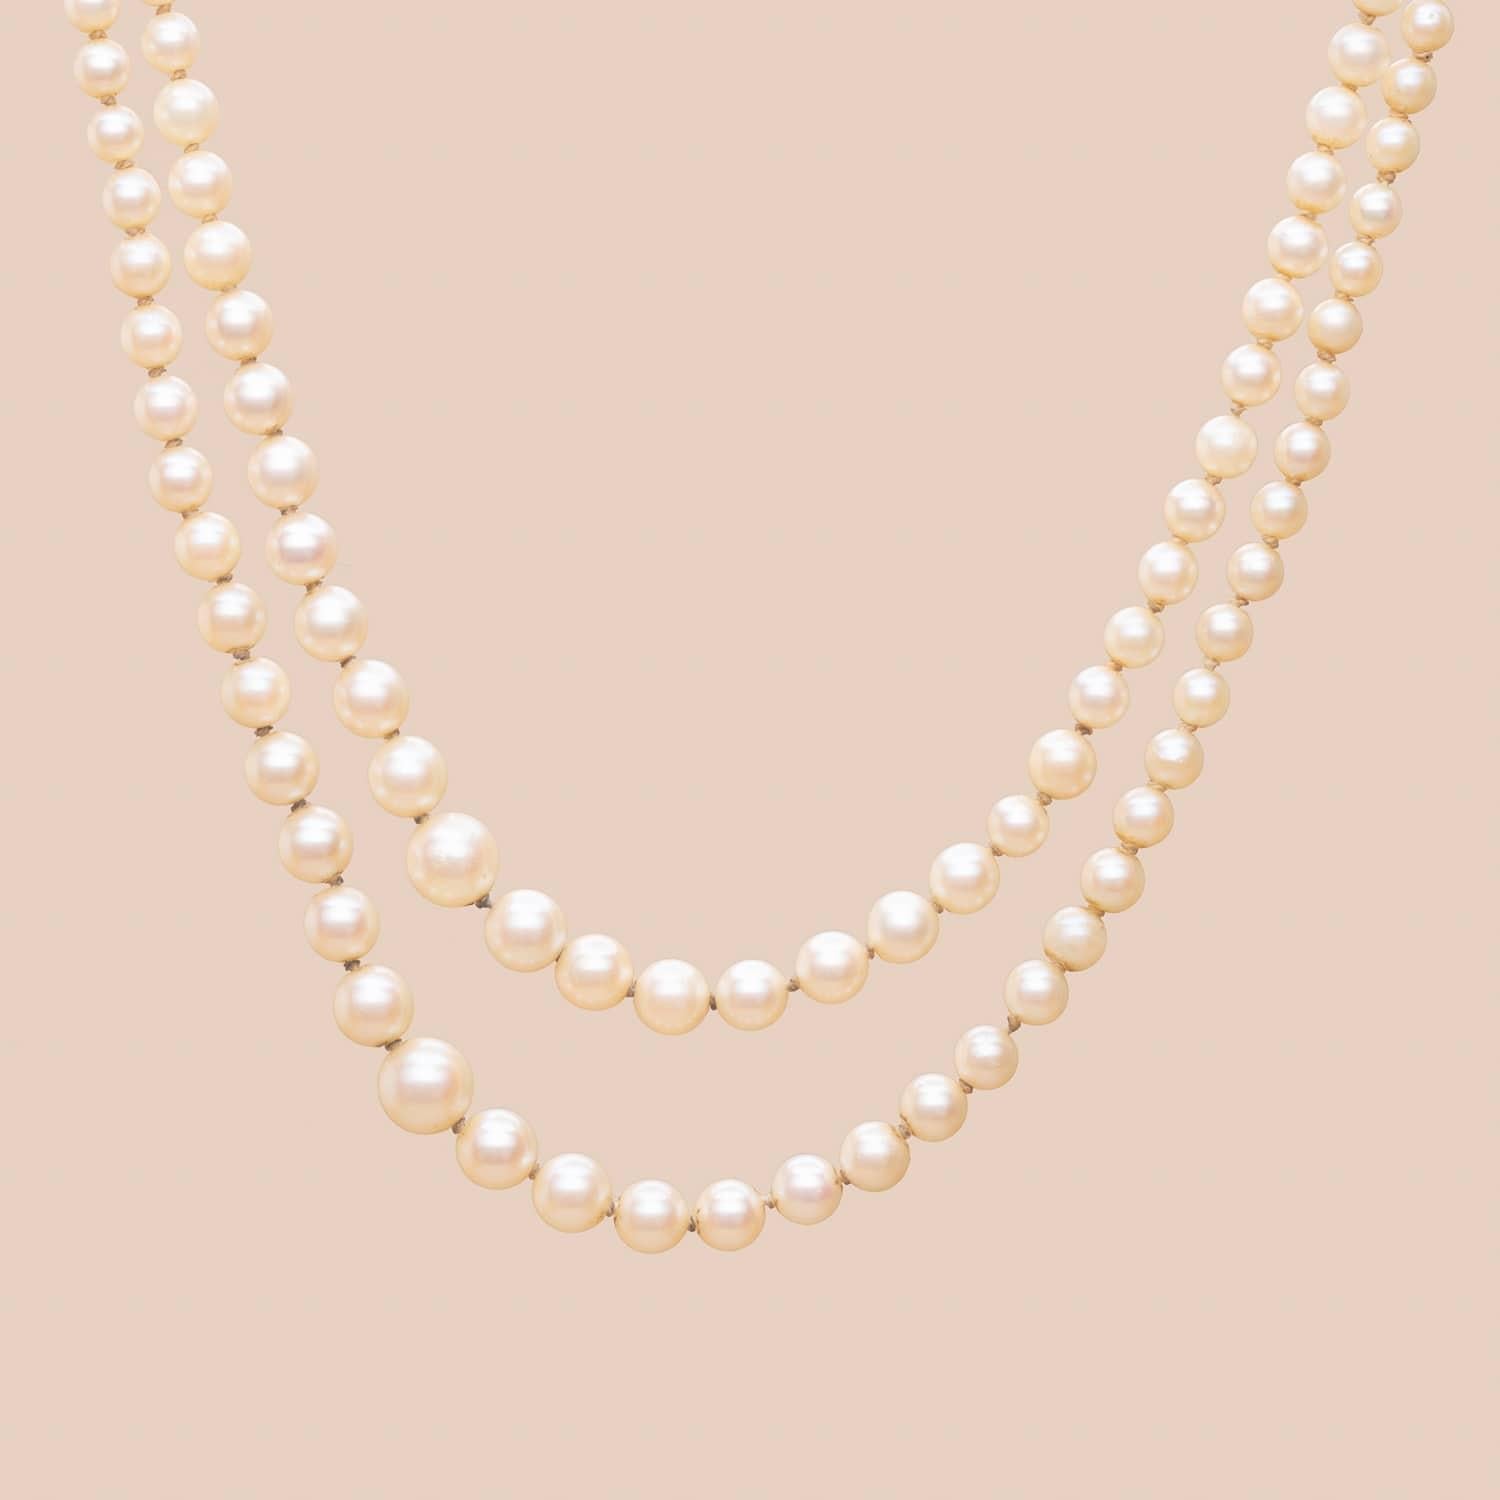 Collier de perles graduées vintage à deux brins. Perles de culture, dont trois perles fines non testées. 

Fermoir en or 18K 

L'artisanat français des années 60 

Longueur : 50 cm

Poids brut : 25,66 g